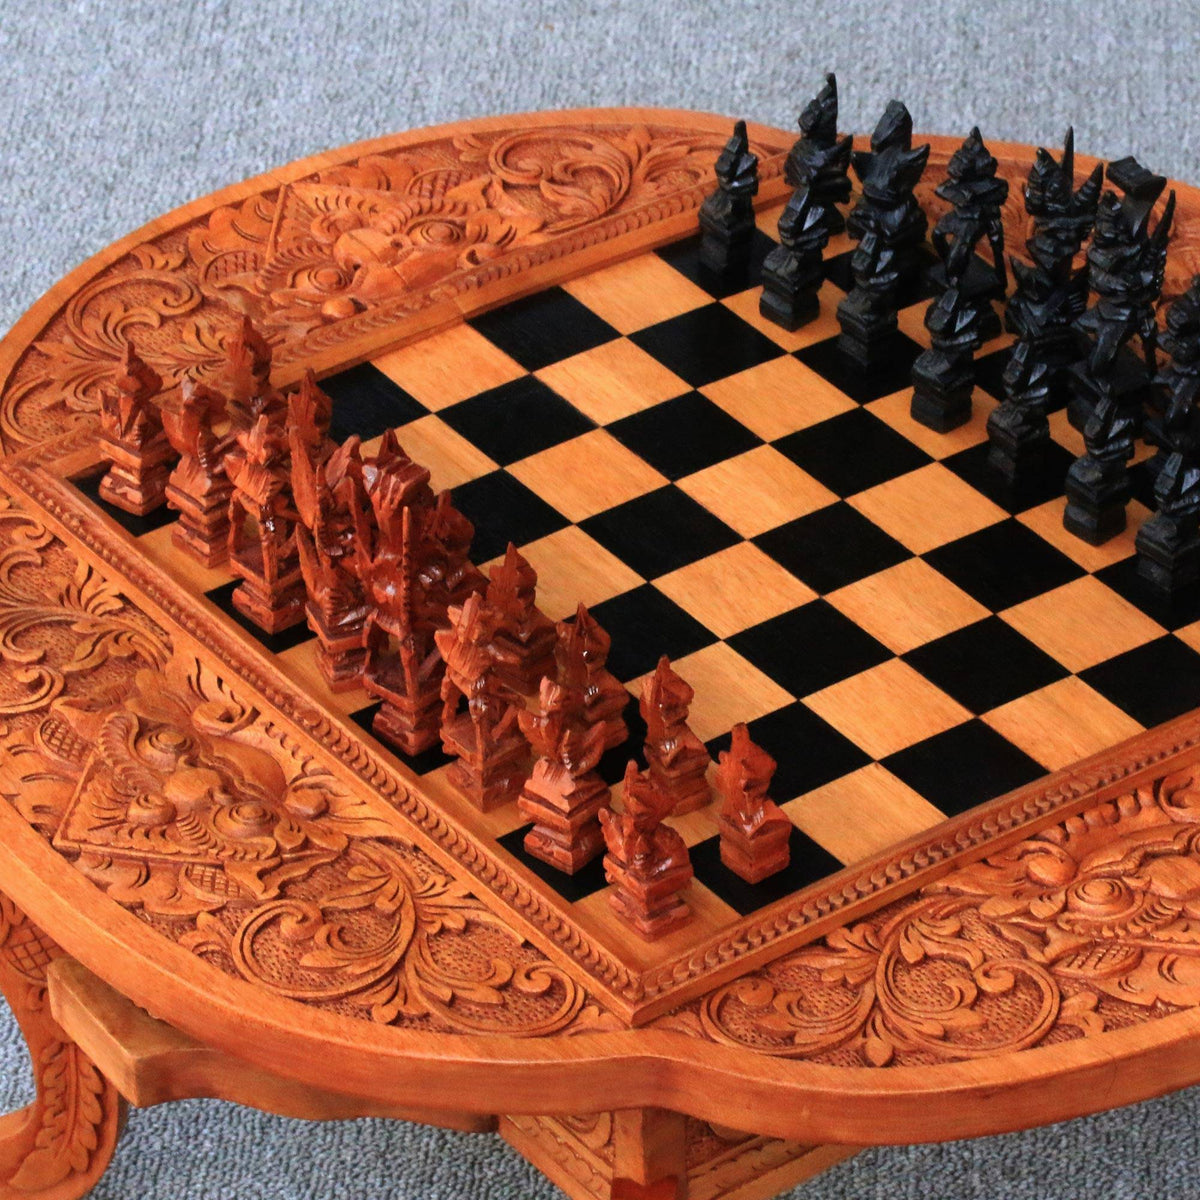 Paradise Chess Set in Kepelan Wood